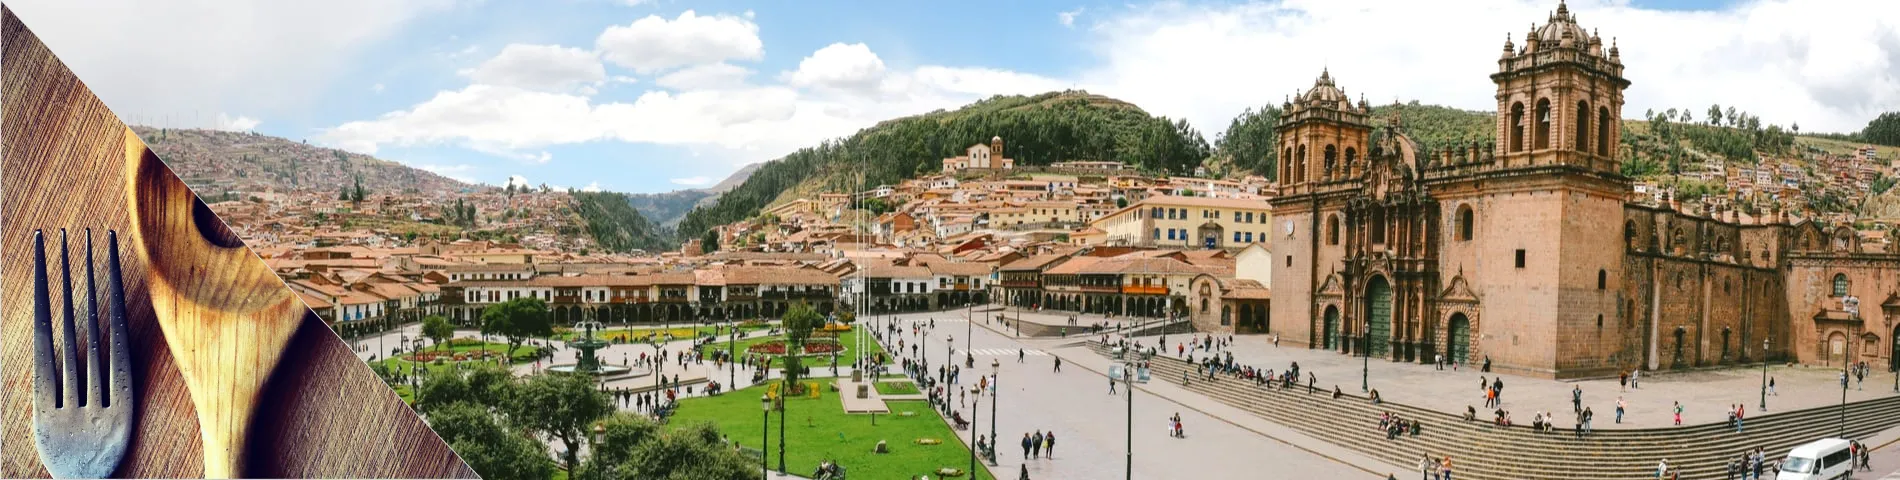 Cuzco - Španělština a Vaření